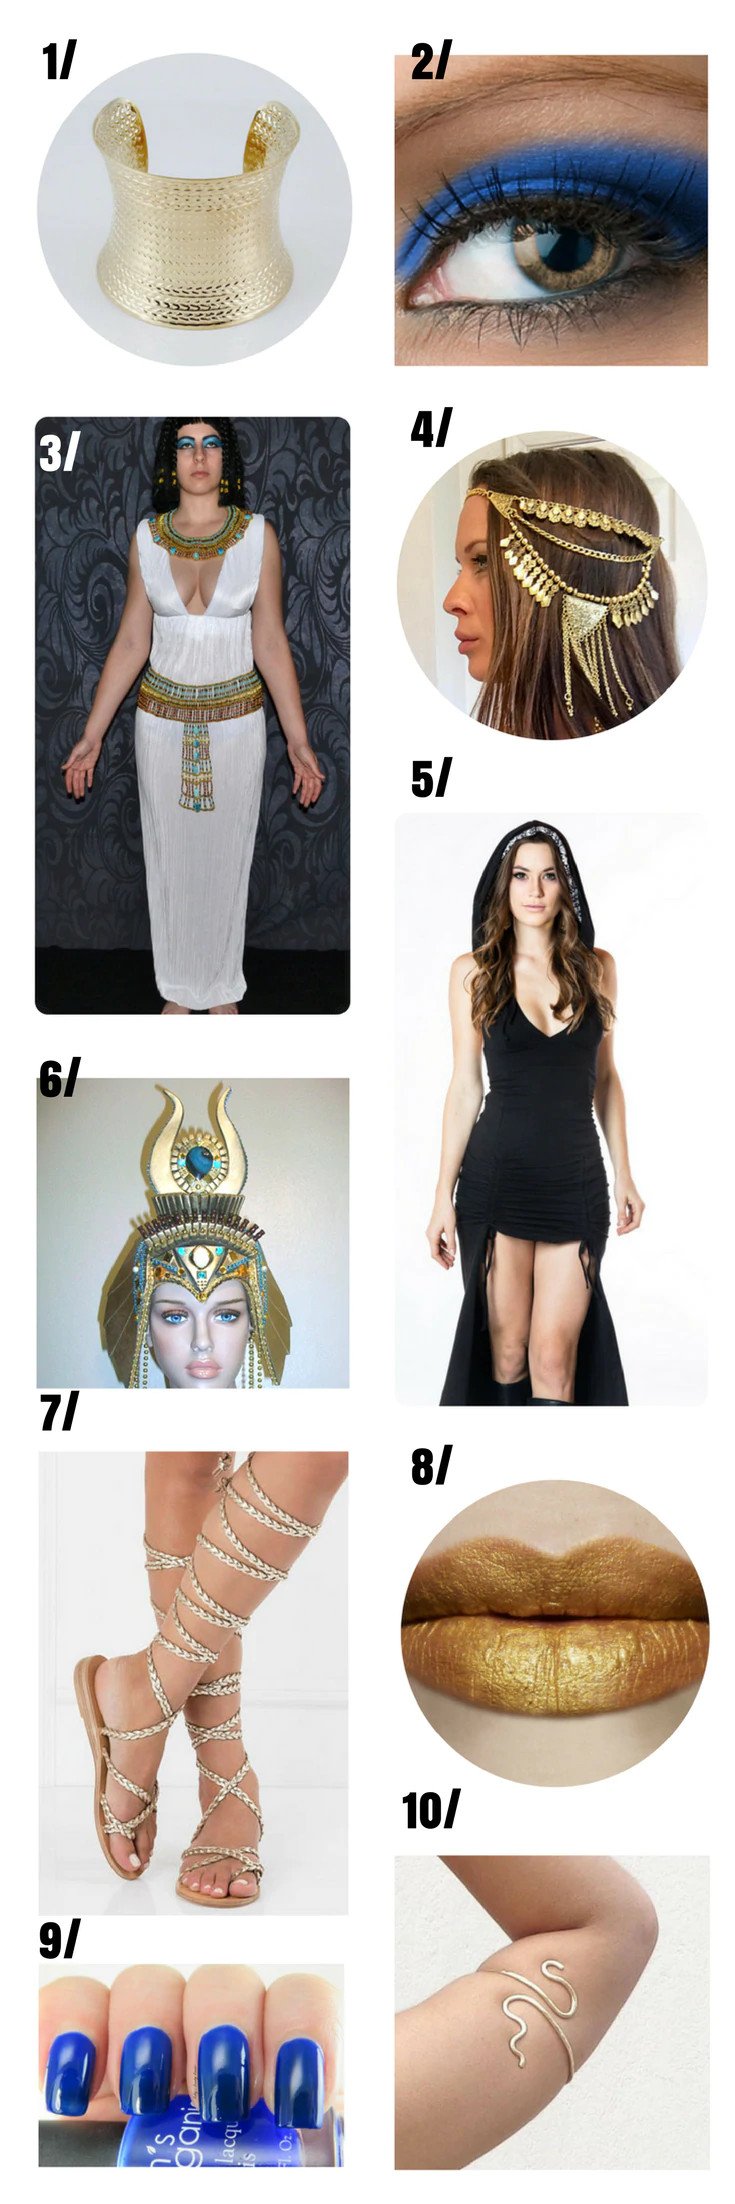 Egyptian Goddess costume for women.